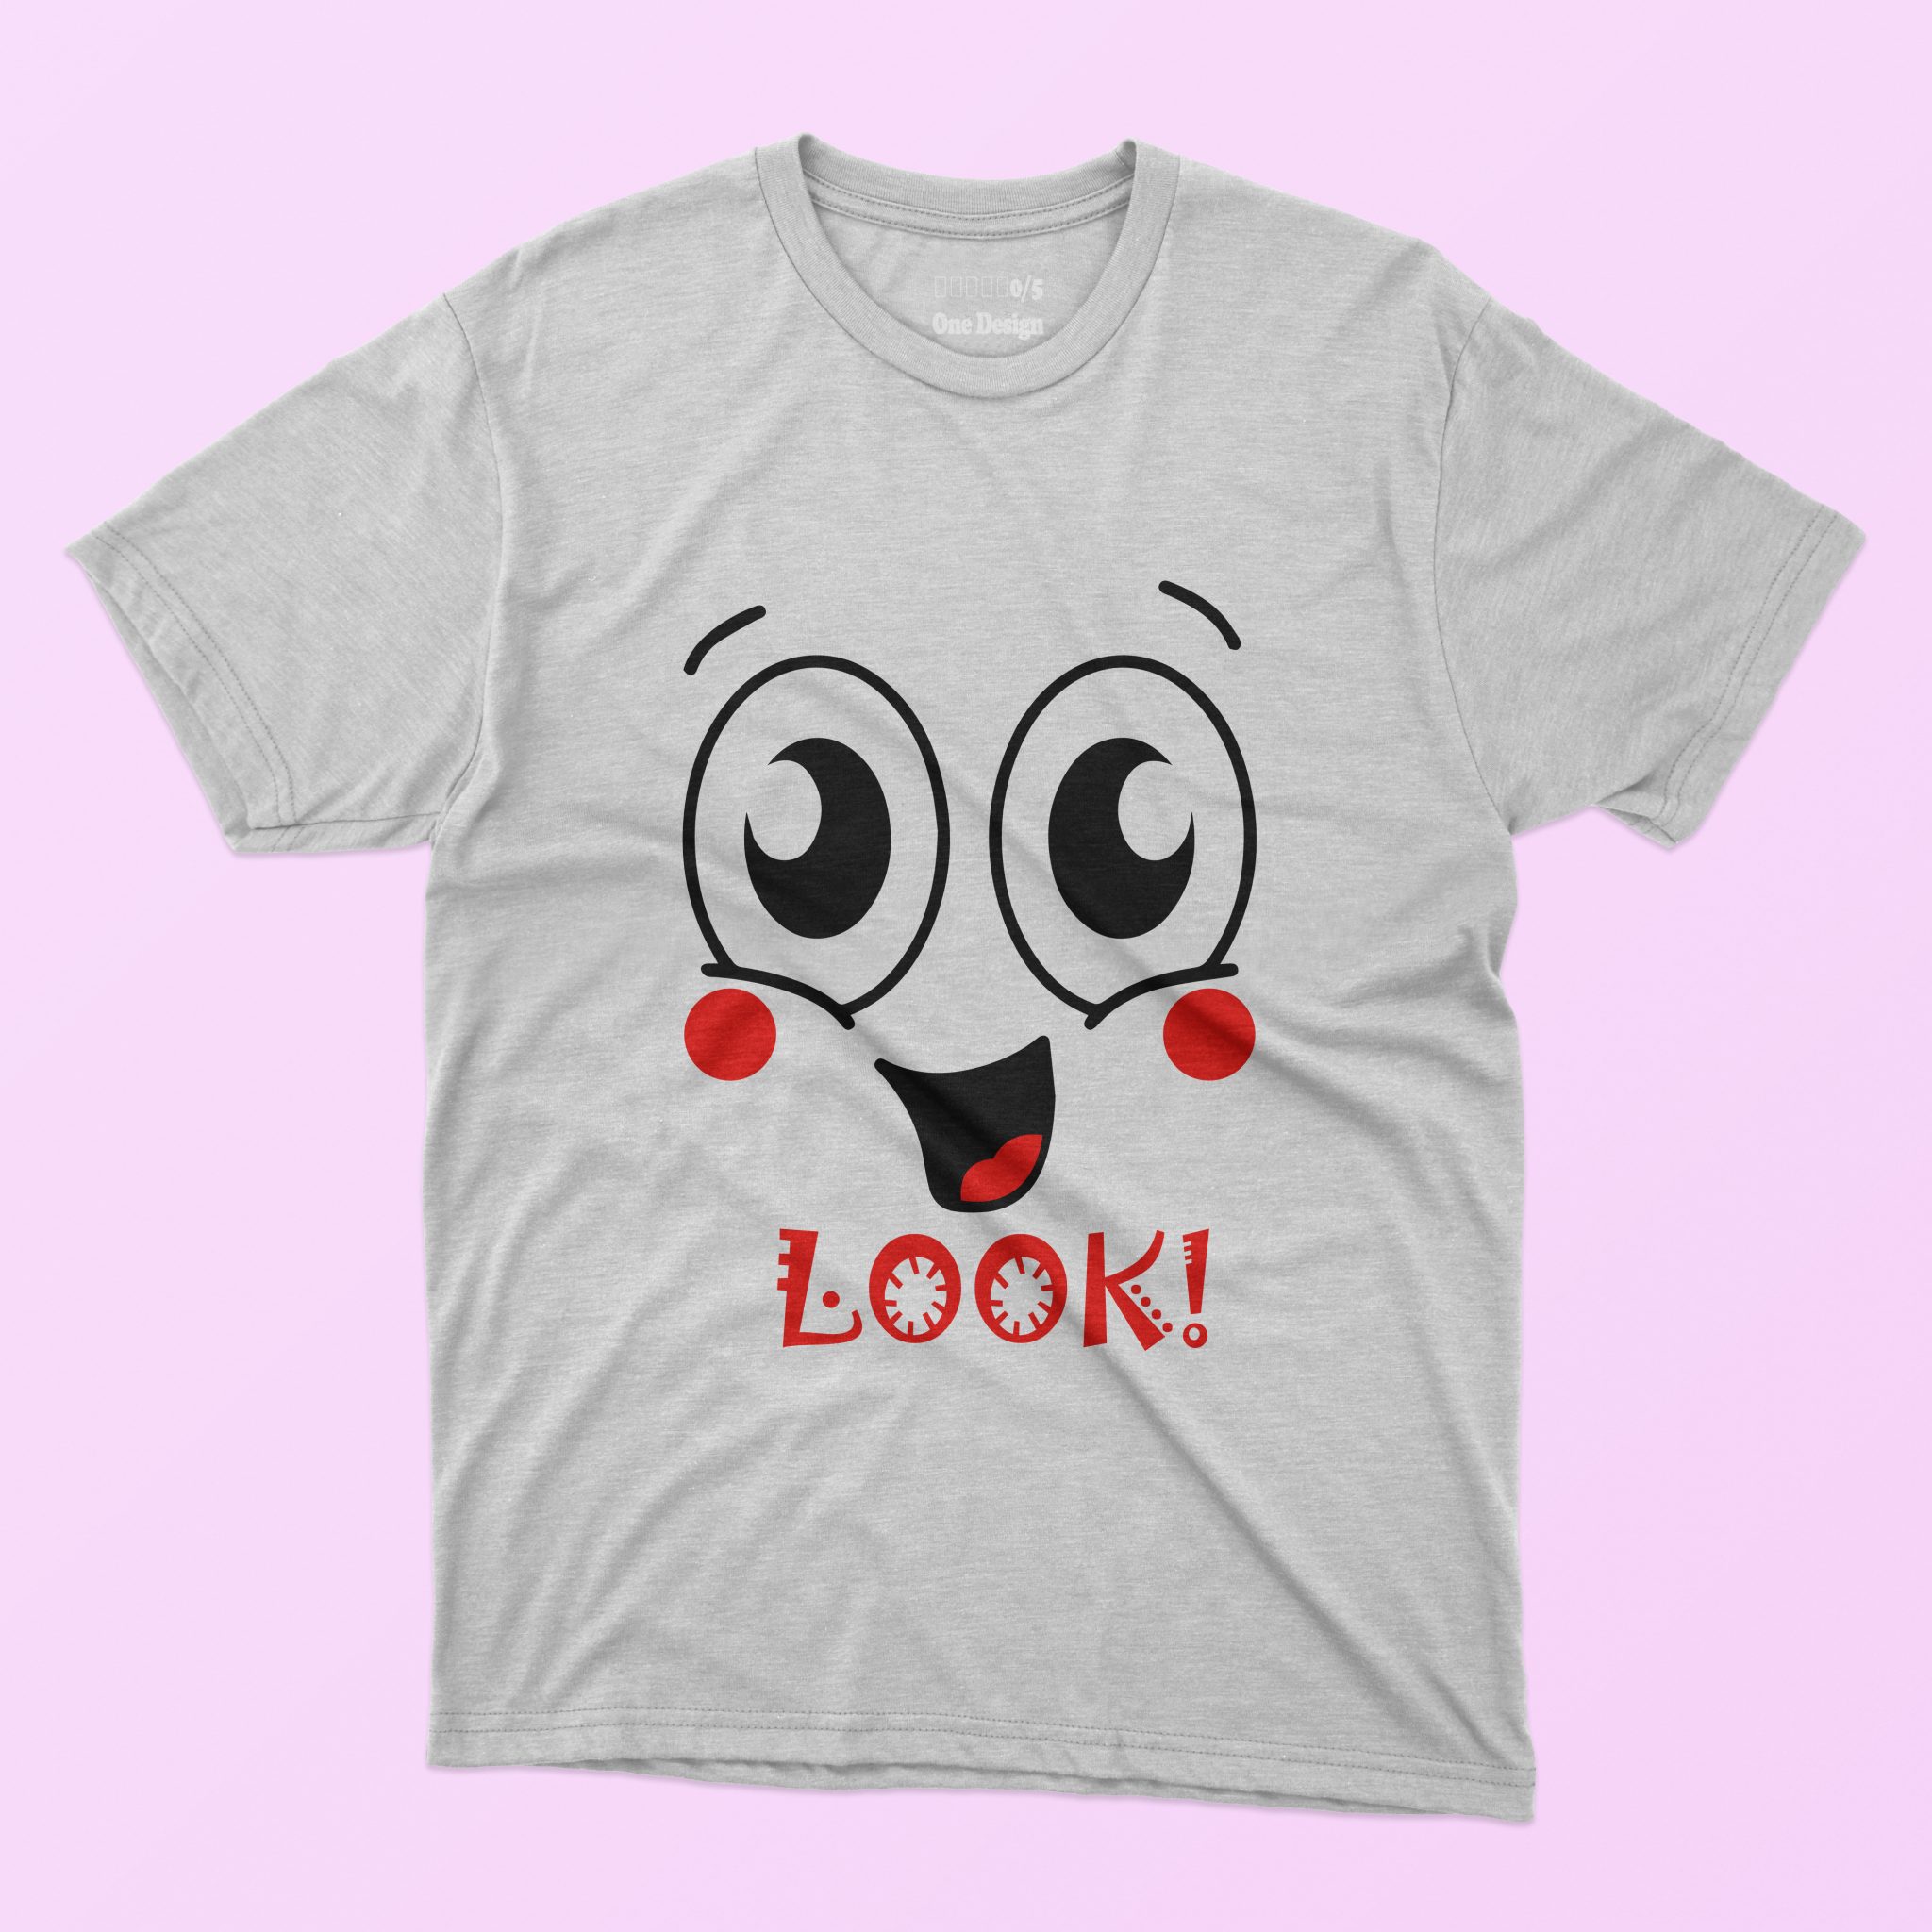 Graphicsmartz - 10 in 1 Face T-shirt Designs Bundle